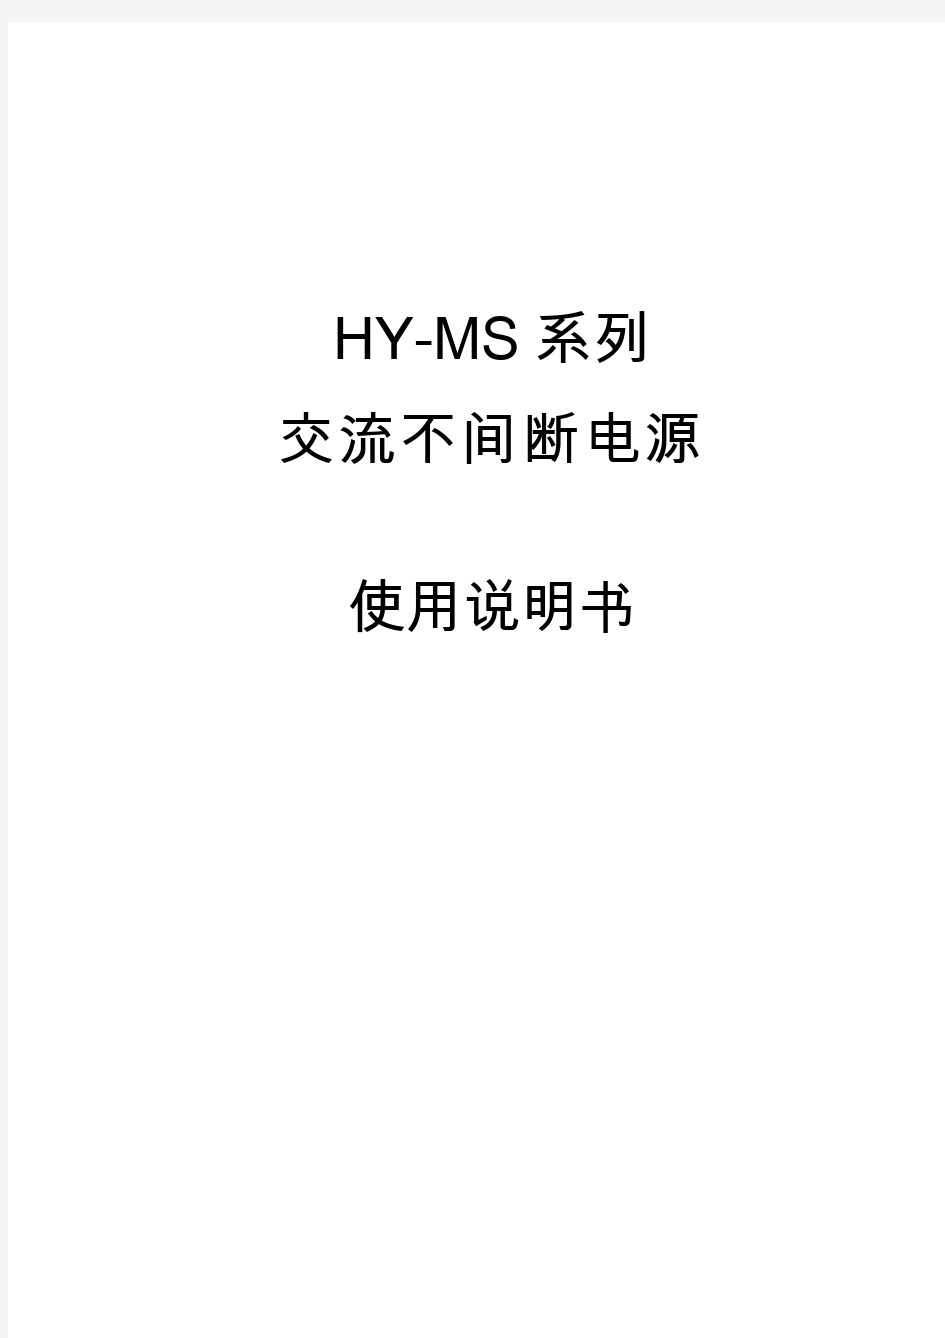 HY-MS系列交流不间断电源系统使用说明书